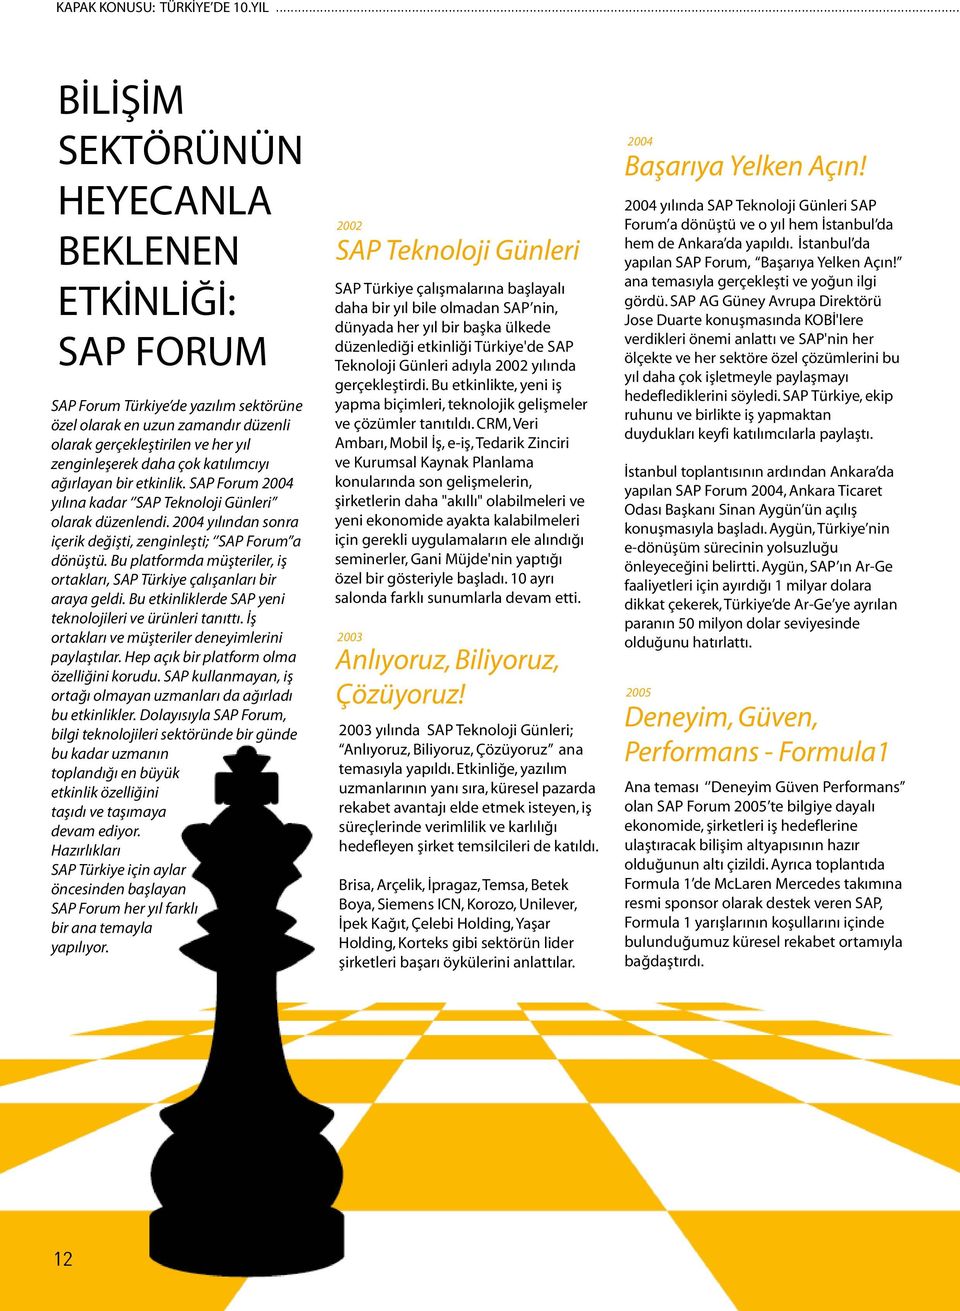 katılımcıyı ağırlayan bir etkinlik. SAP Forum 2004 yılına kadar SAP Teknoloji Günleri olarak düzenlendi. 2004 yılından sonra içerik değişti, zenginleşti; SAP Forum a dönüştü.